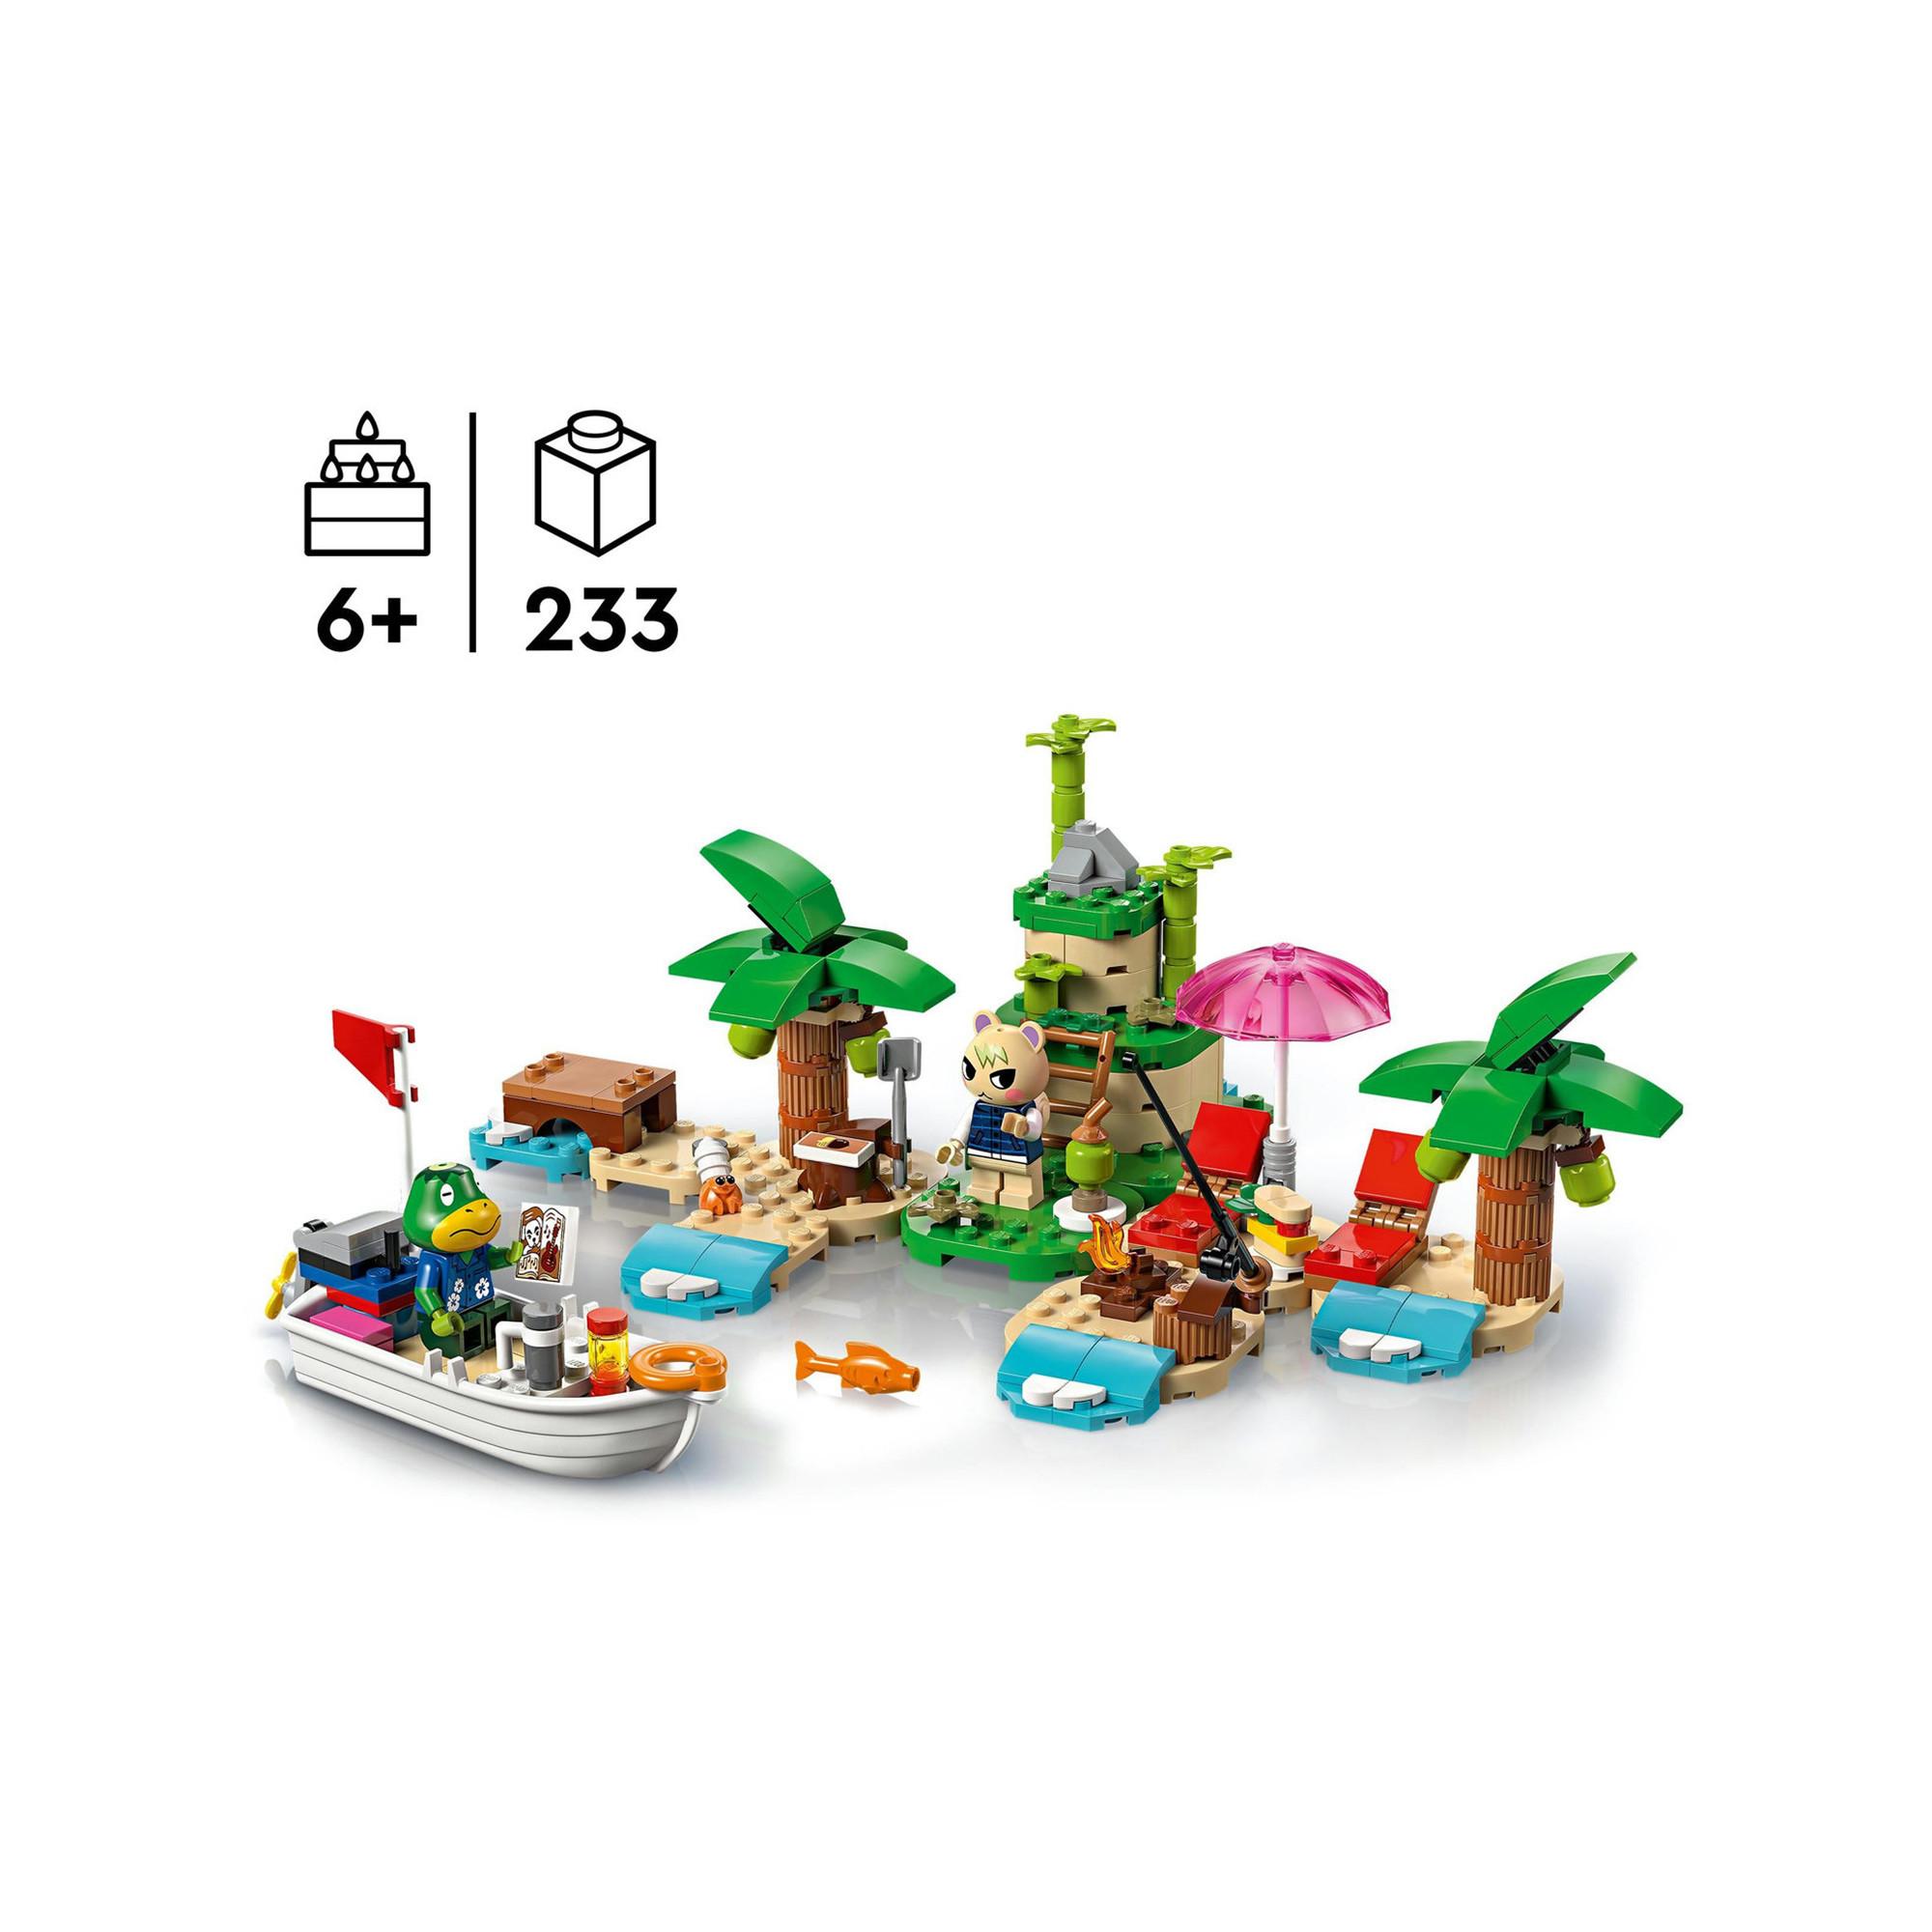 LEGO®  77048 Käptens Insel-Bootstour 